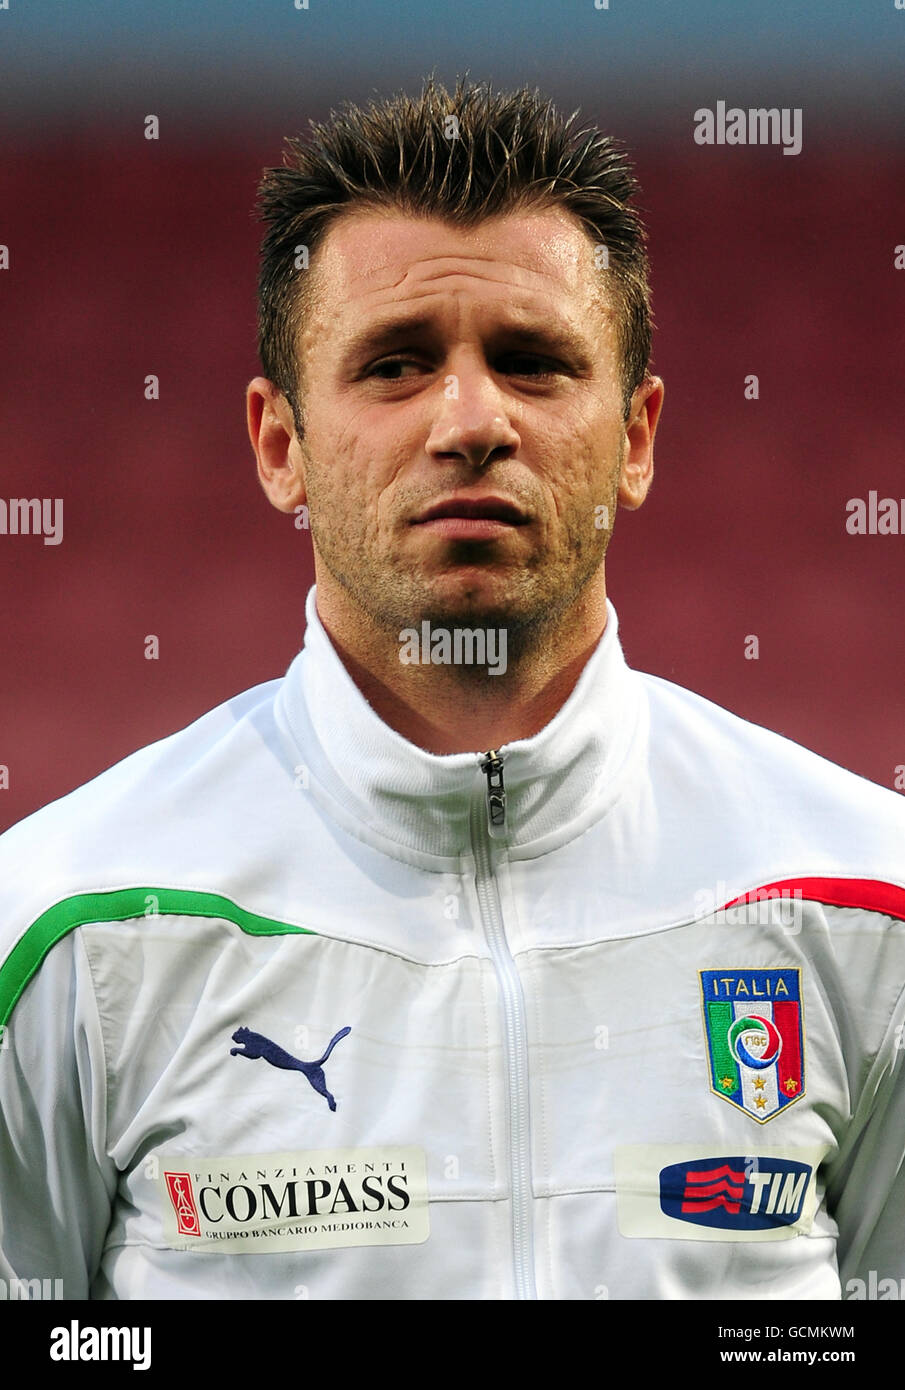 Soccer - International Friendly - Italy v Ivory Coast - Upton Park. Antonio Cassano, Italy Stock Photo